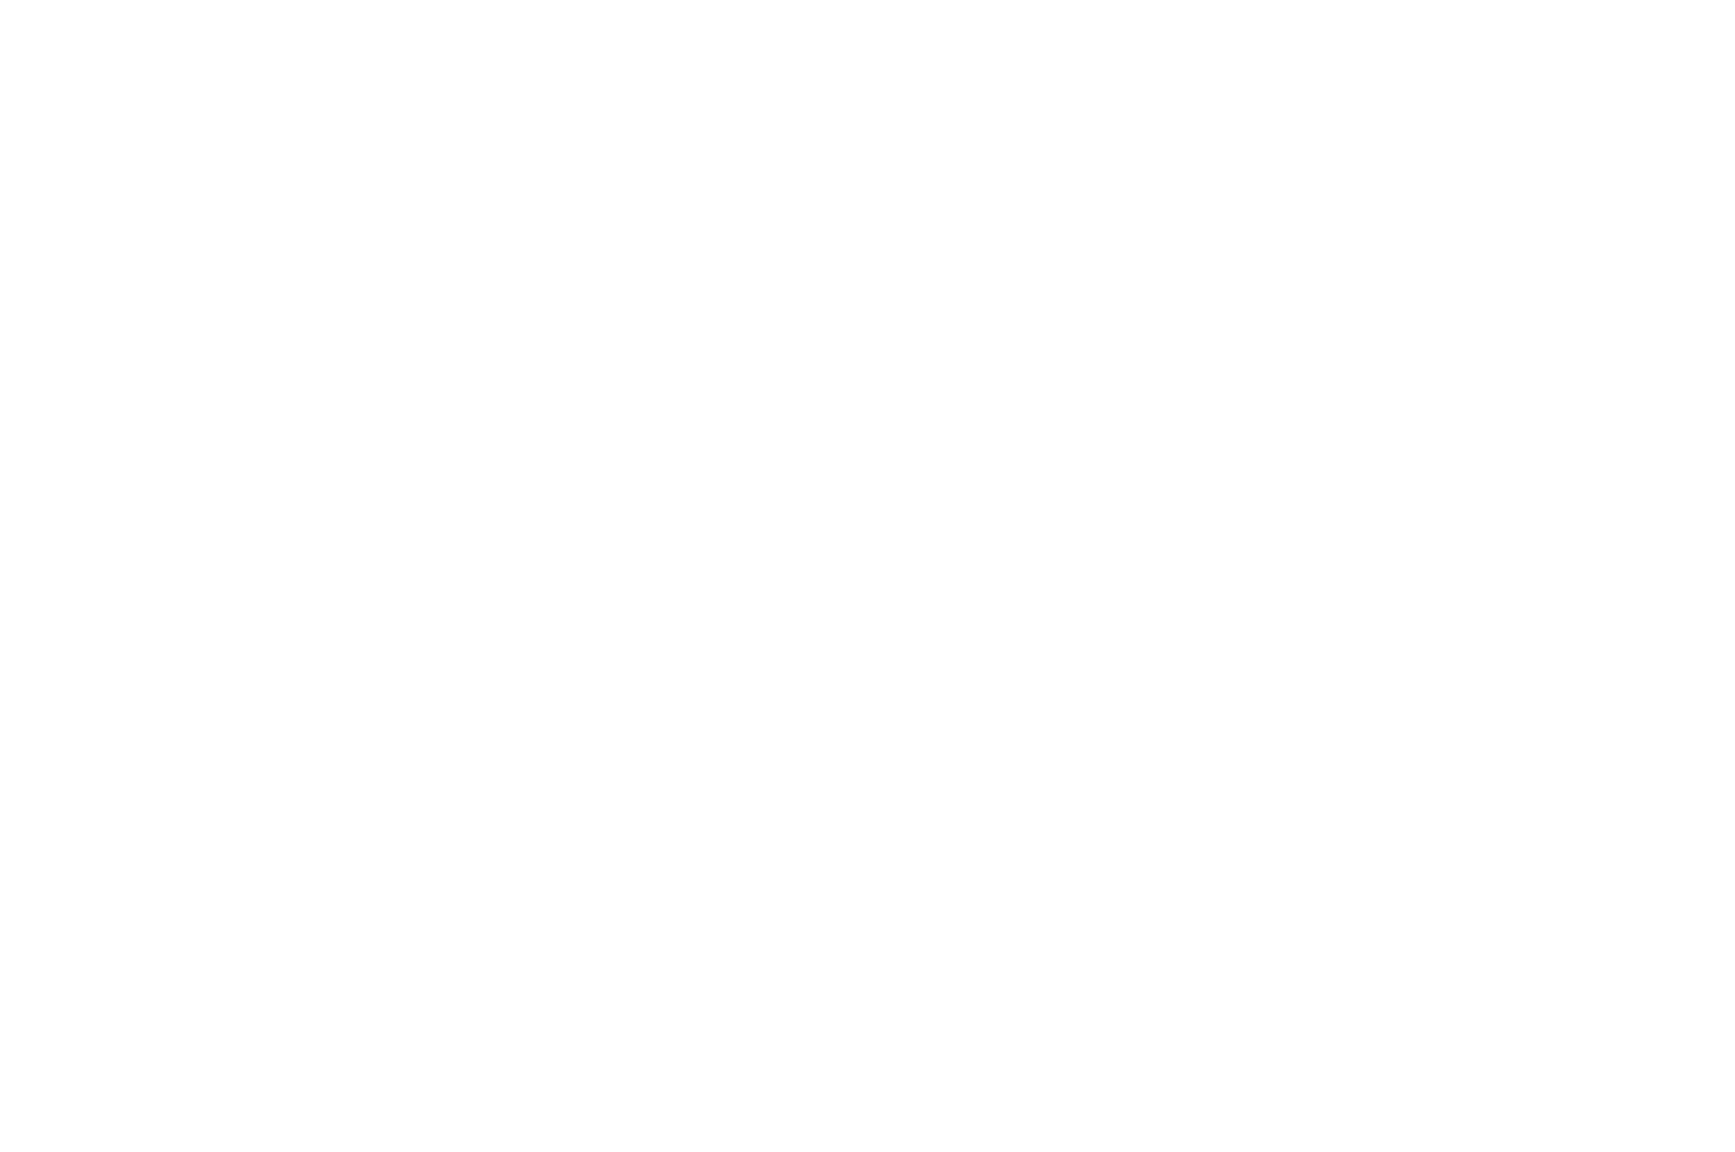 Winner Best Thriller Atlanta Horror Film Festival 2022